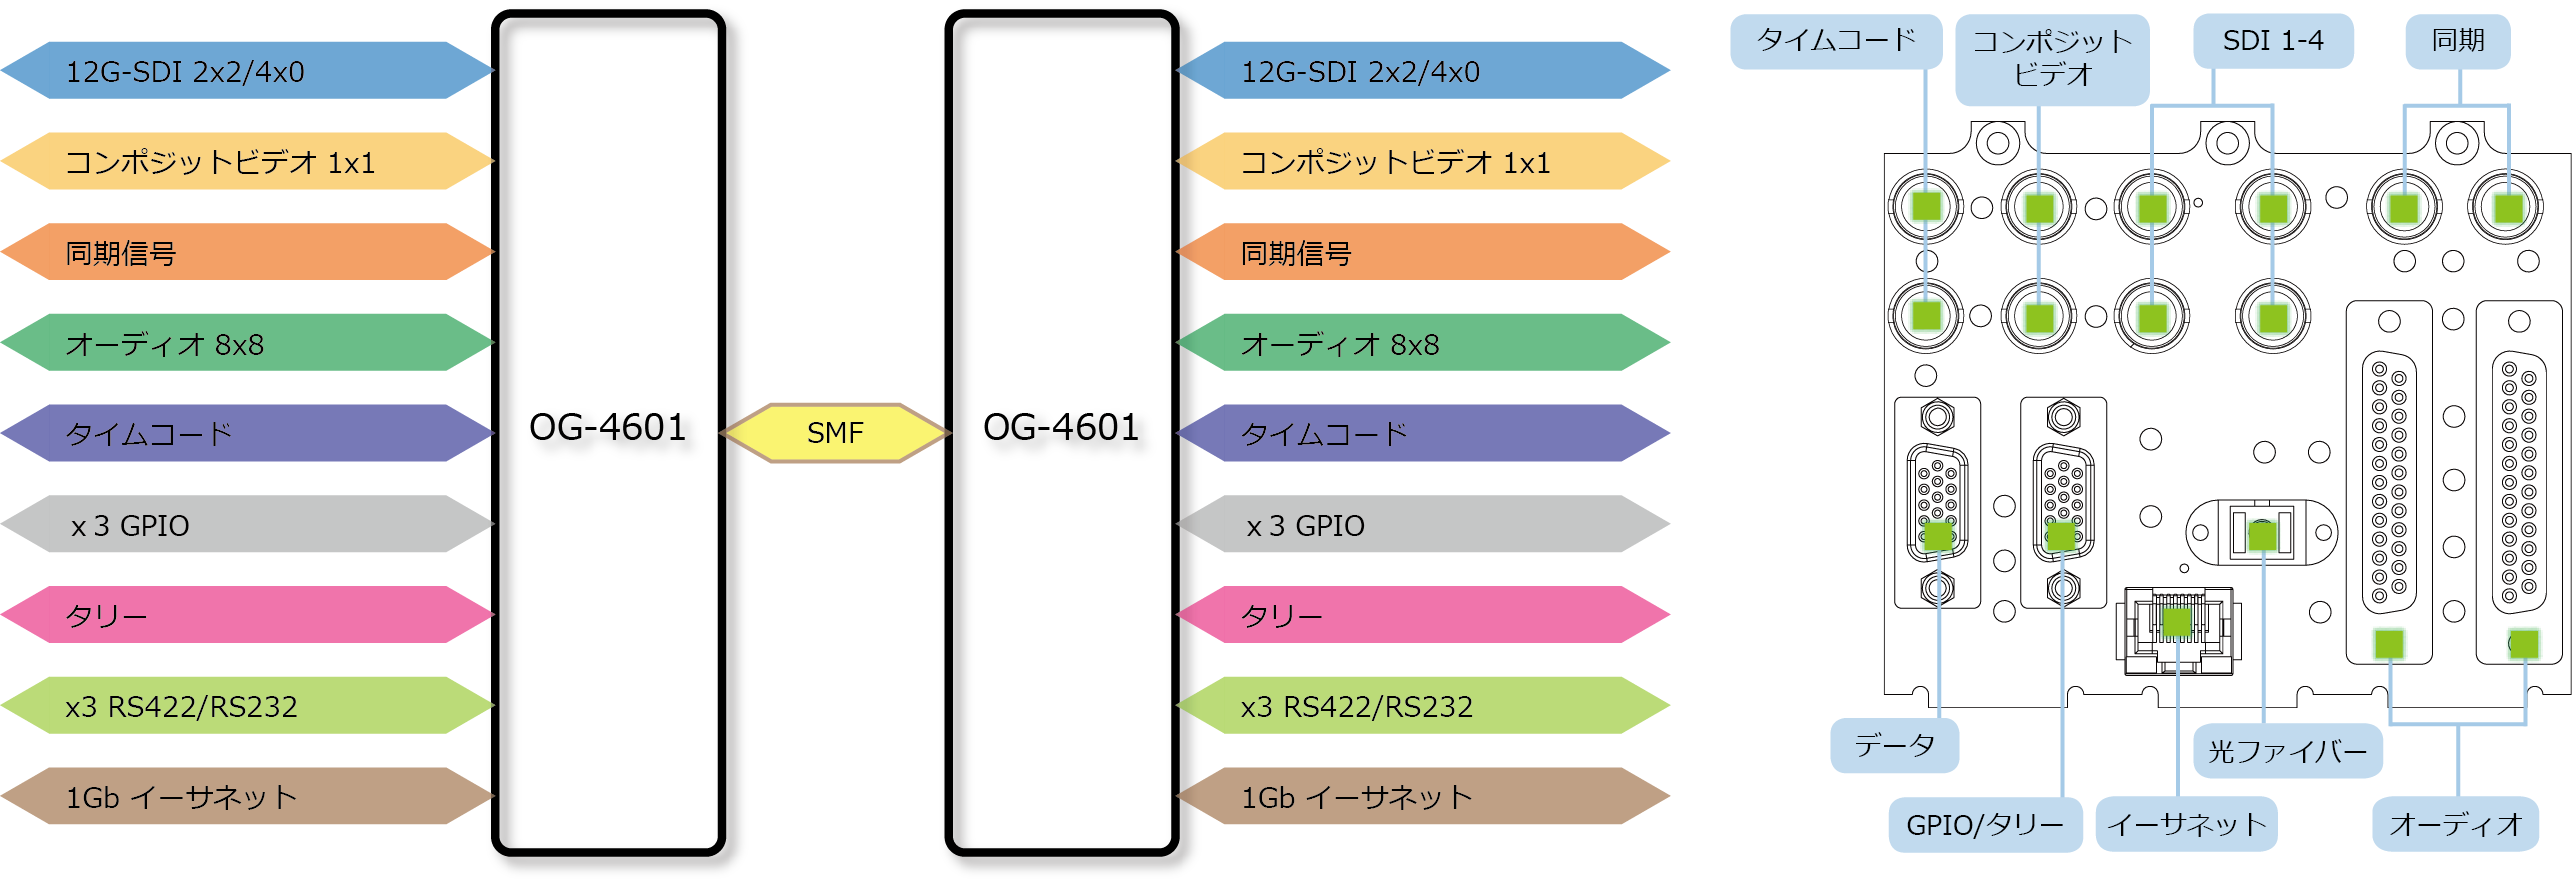 OG-4601 ブロック図/リアパネル図